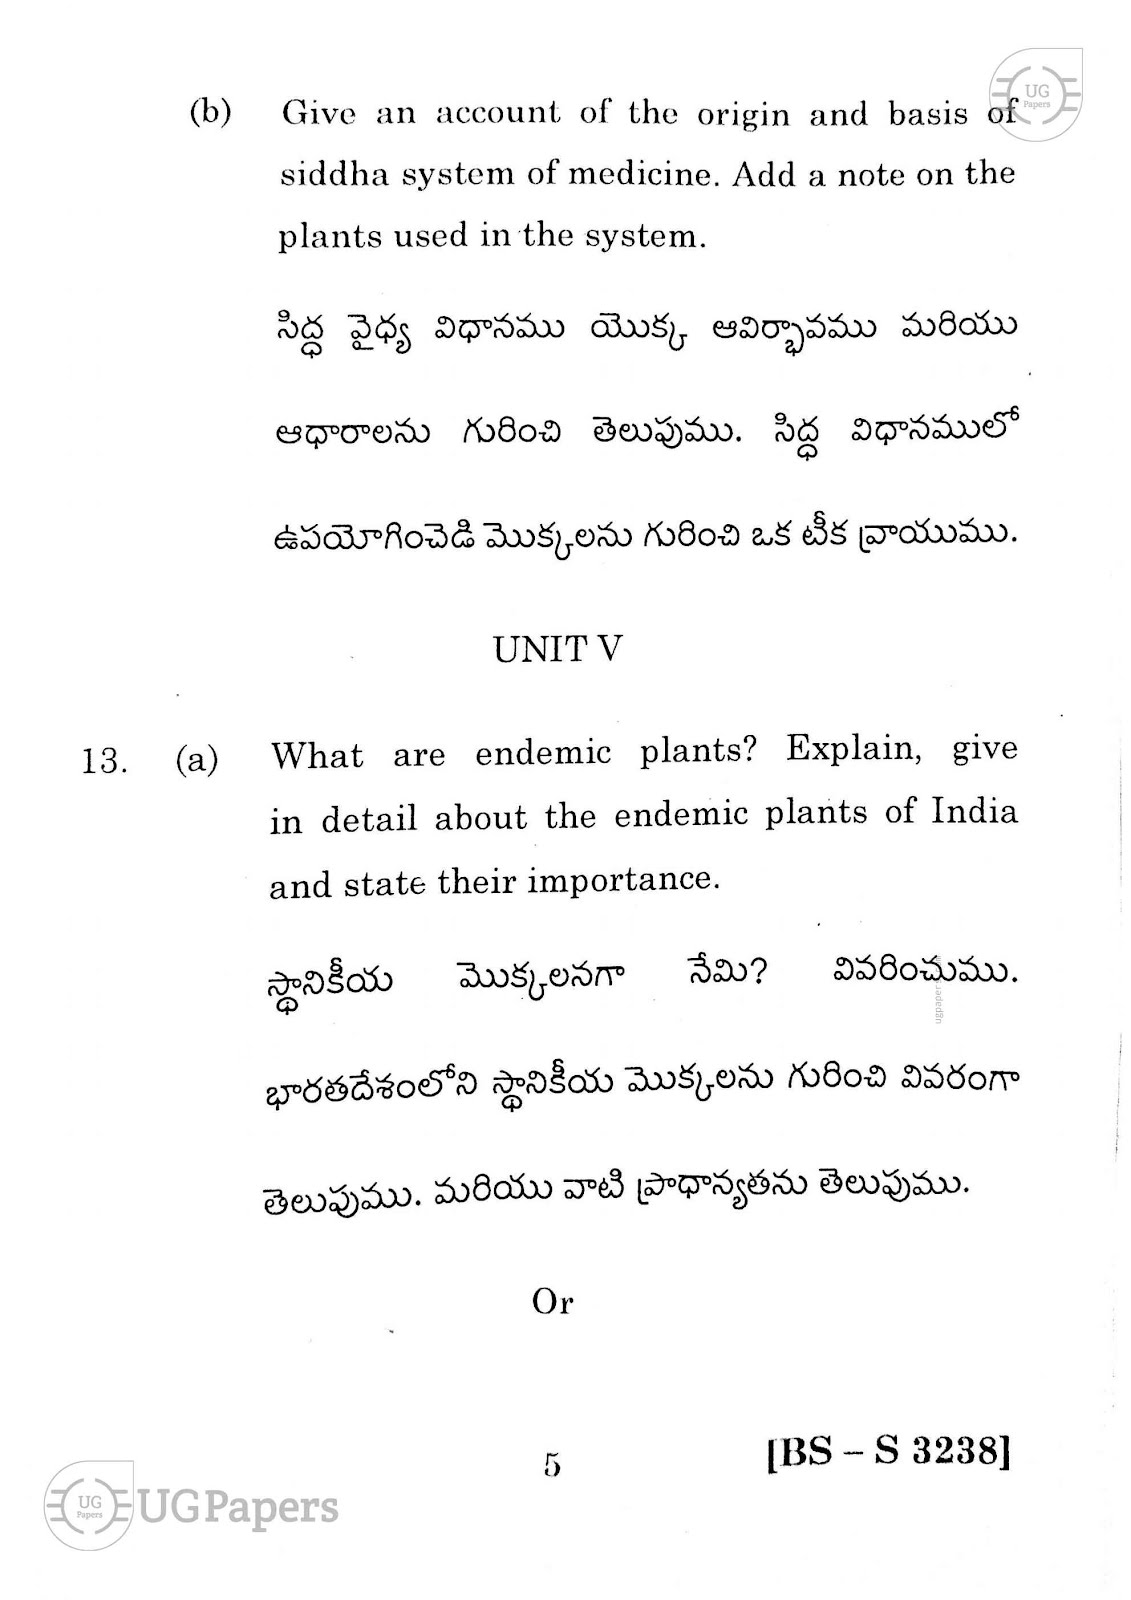 ugpapers.com, Andhra University, Semester 6, Botany Cluster-2 2020